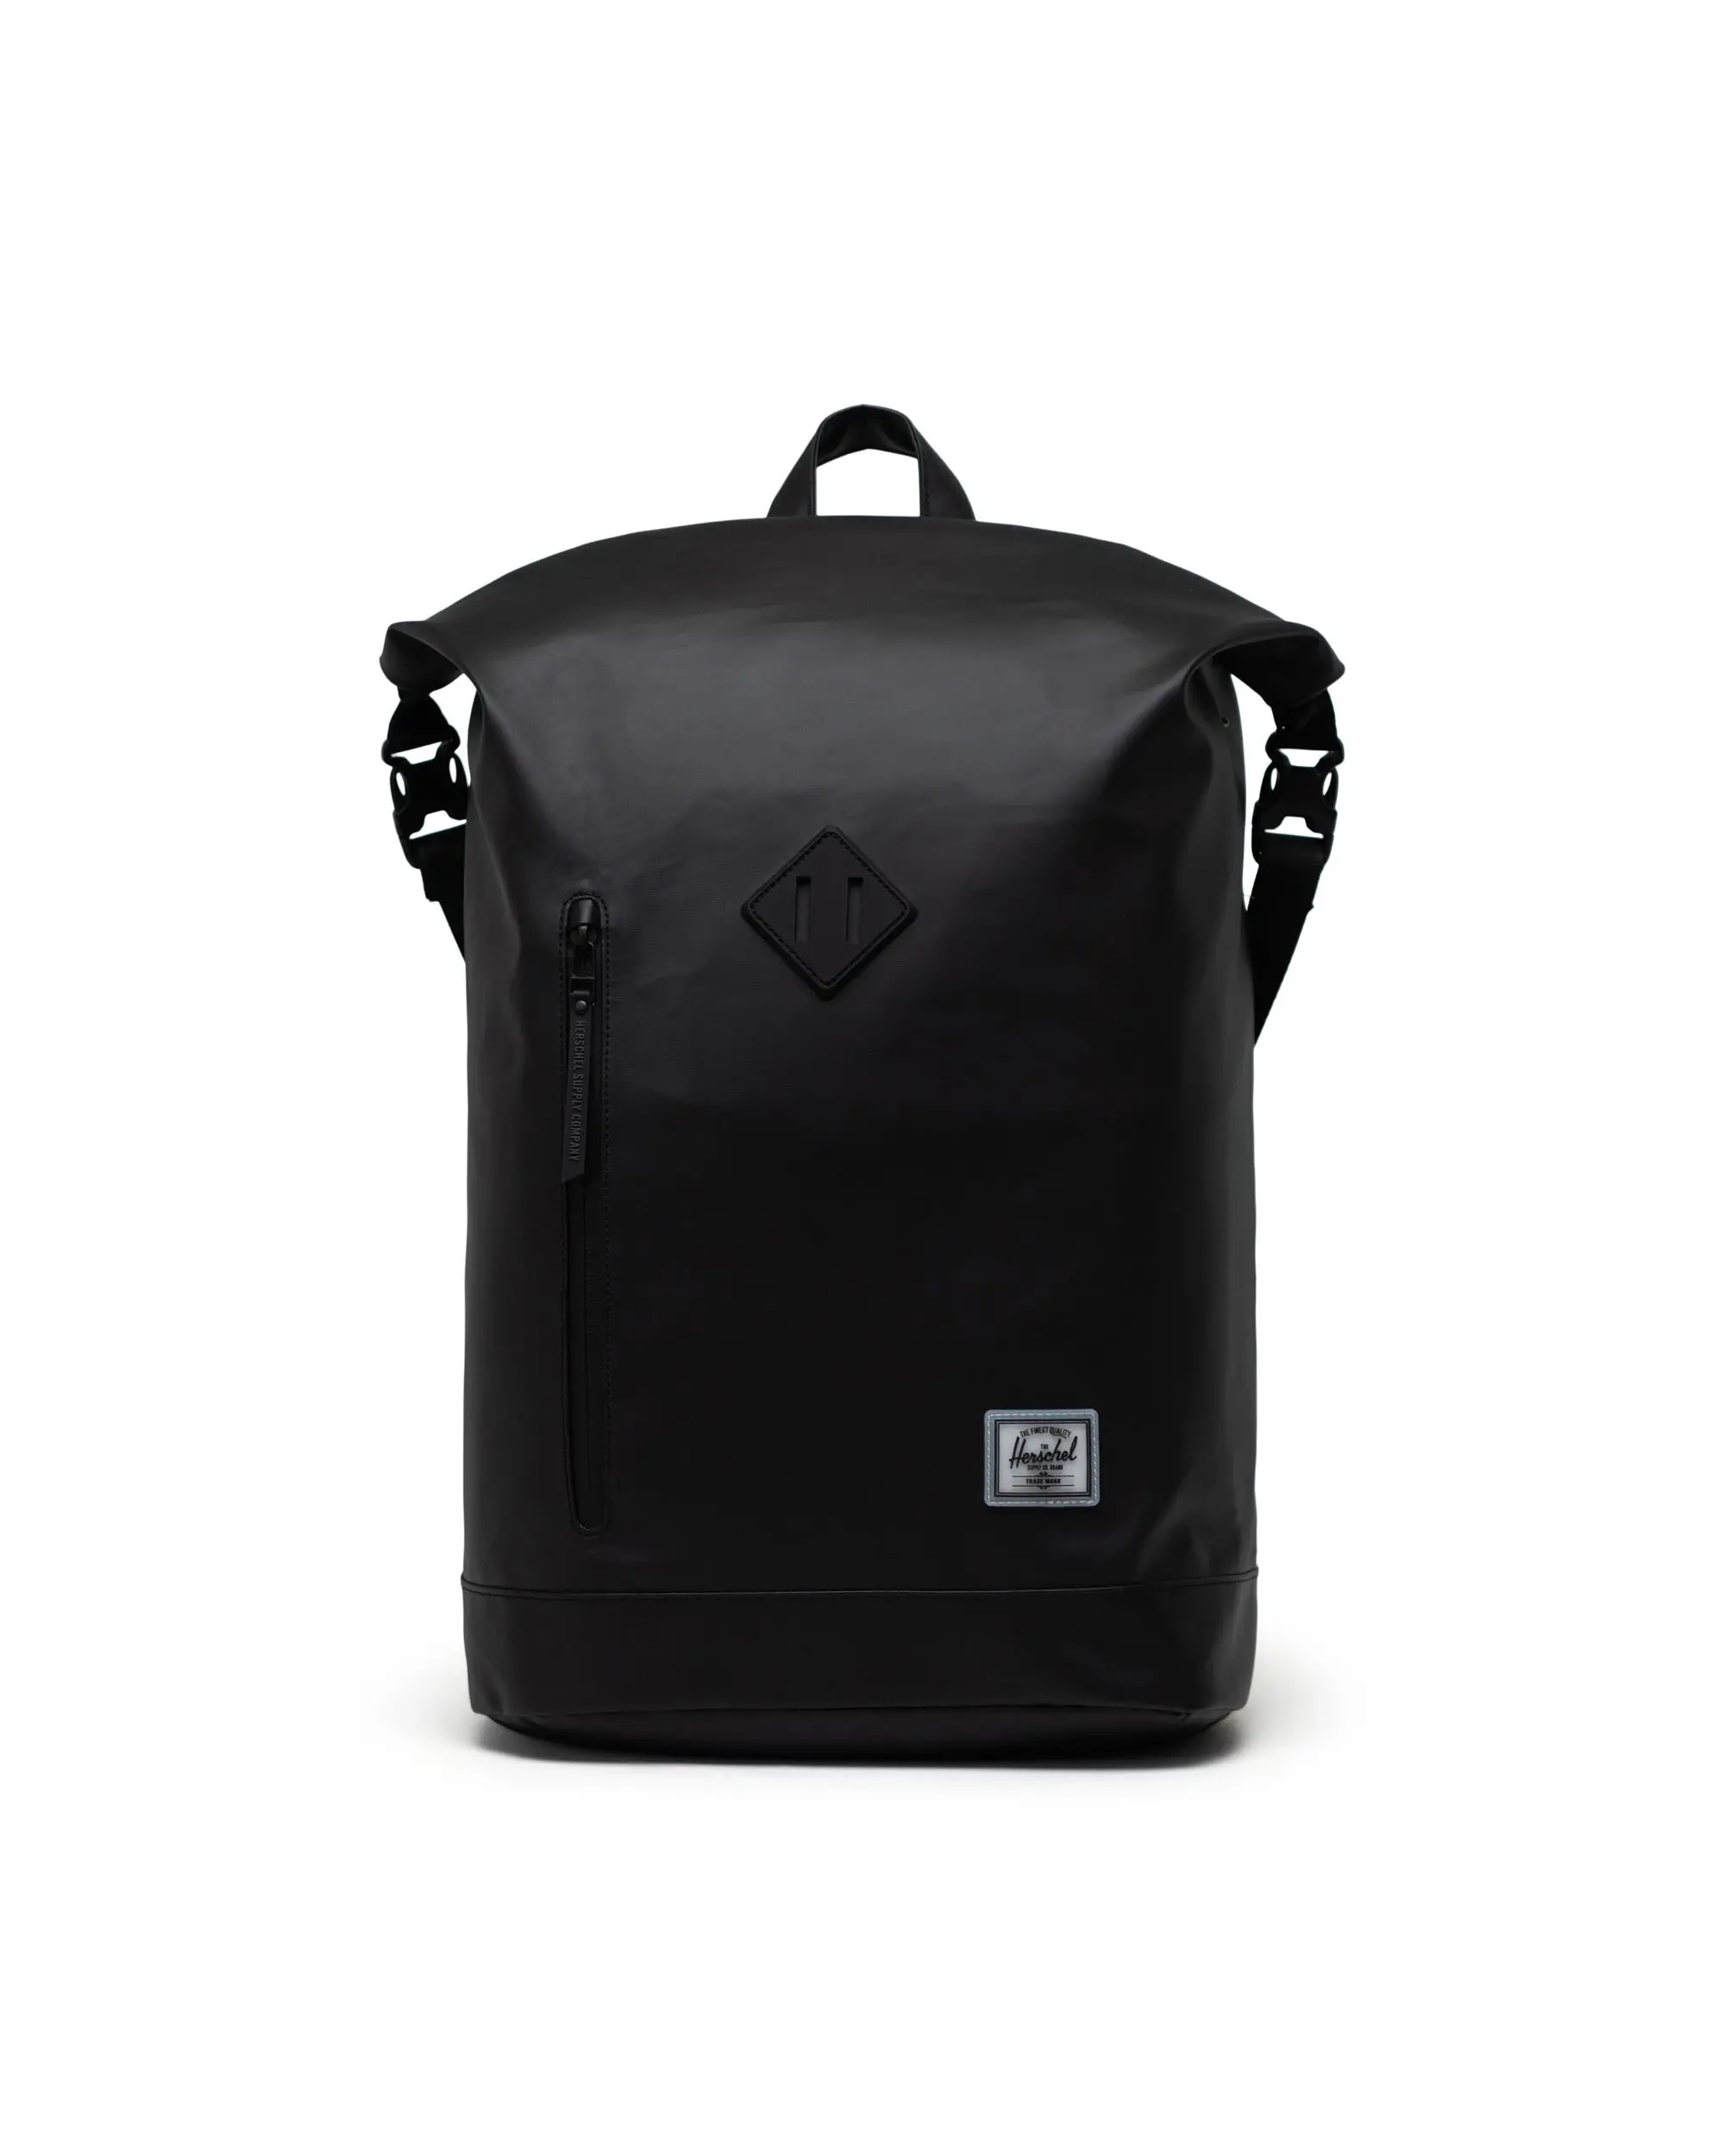 Herschel sac à dos - Roll Top Backpack - Noir